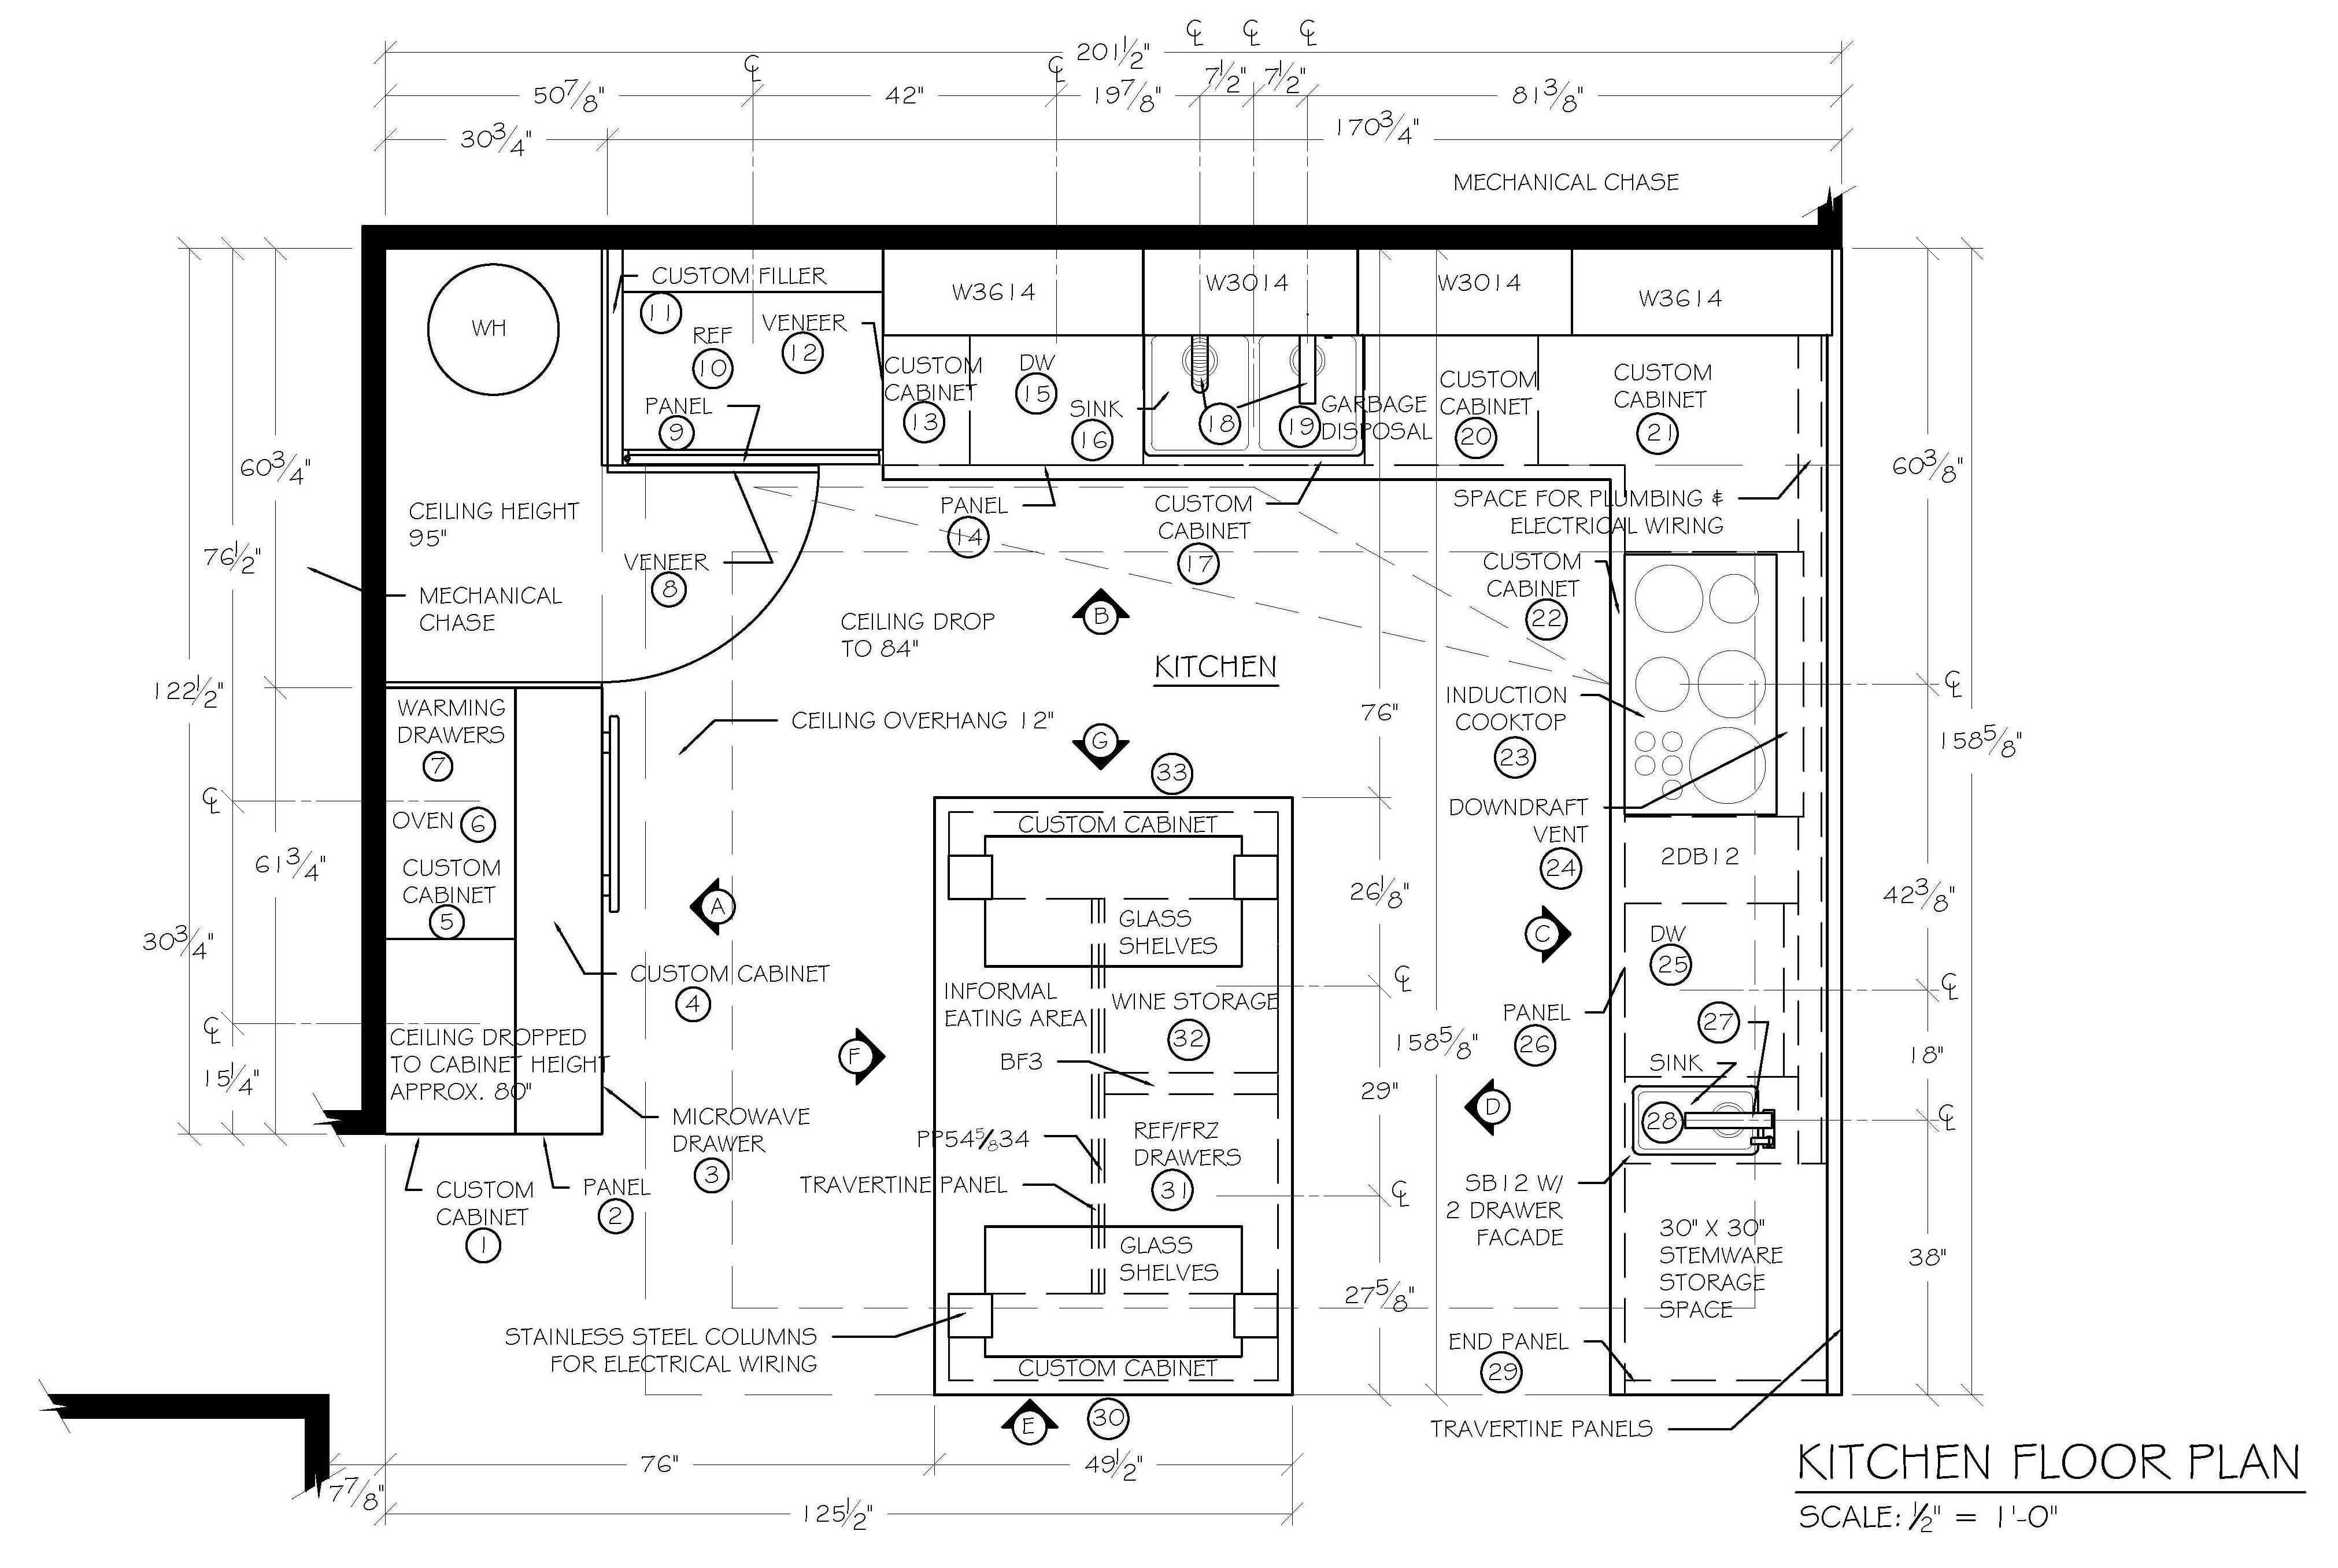 Кухня-гостиная 17 кв. м: дизайн, фото с зонированием, с диваном, квадратная и прямоугольная, совмещение, планировка